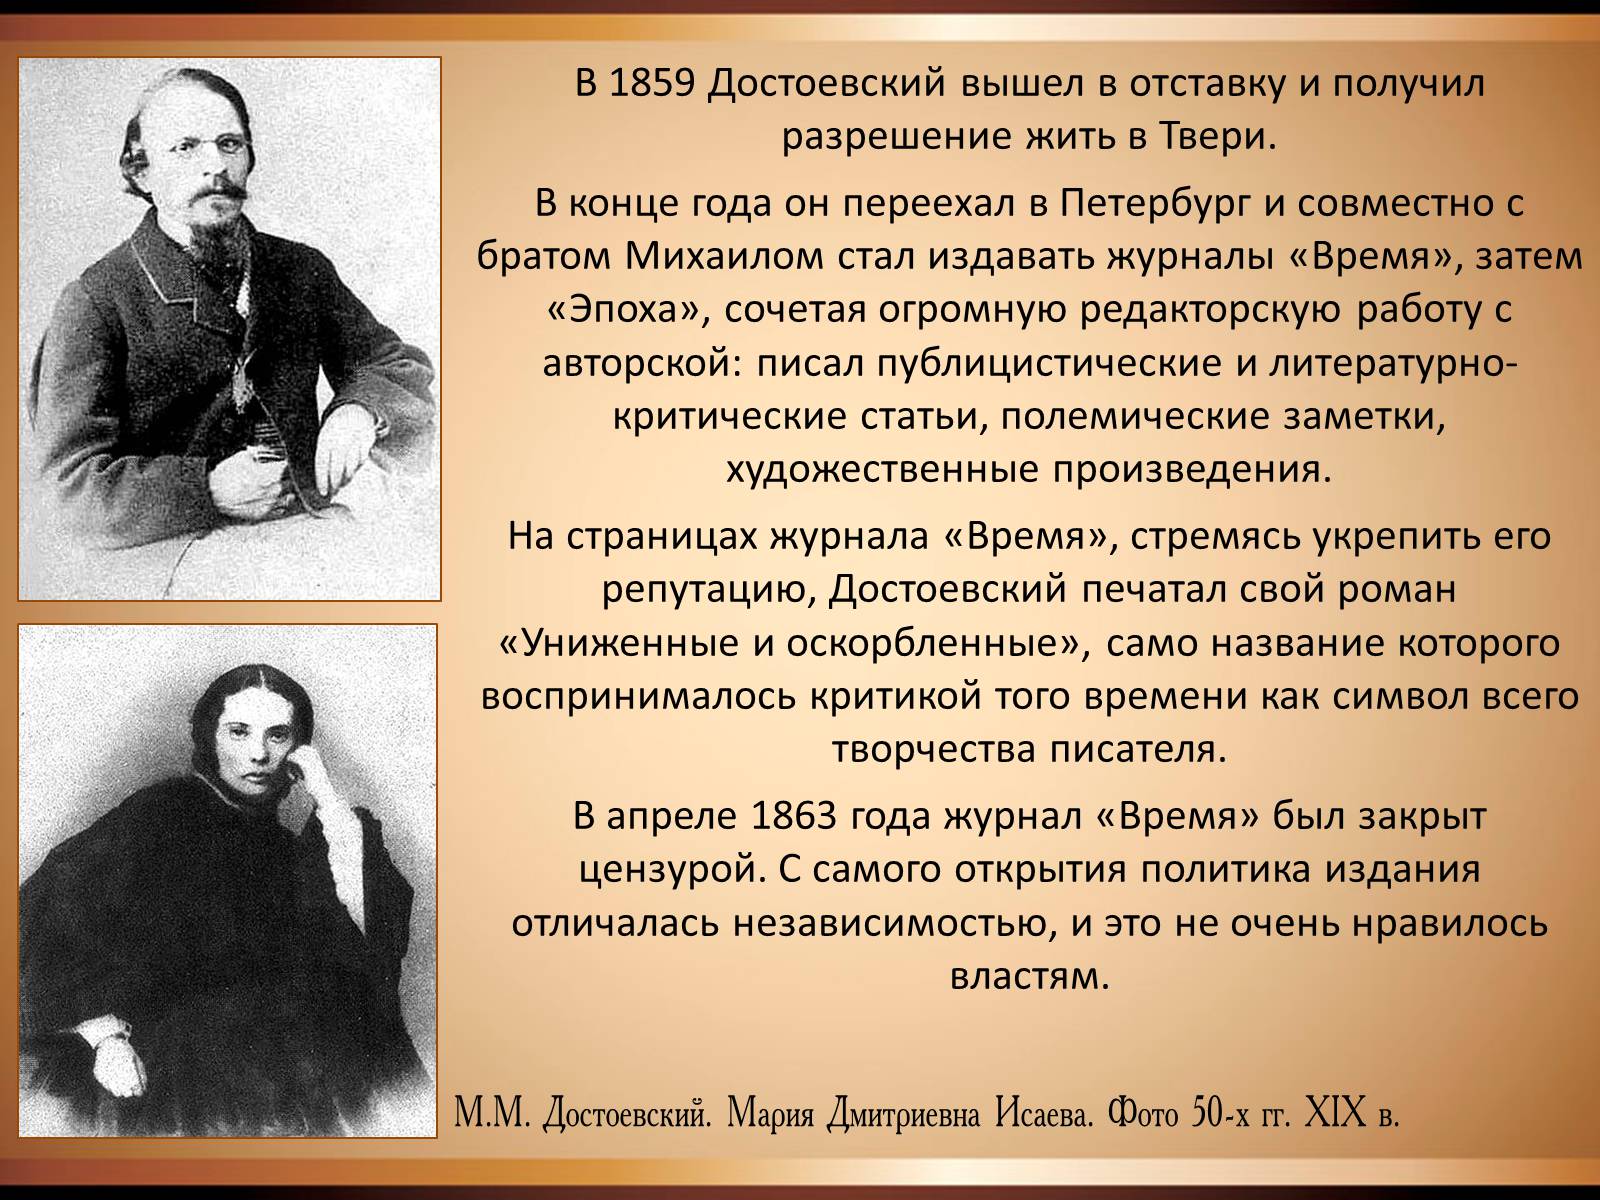 Размышление о судьбе достоевского. Достоевский 1859 год.